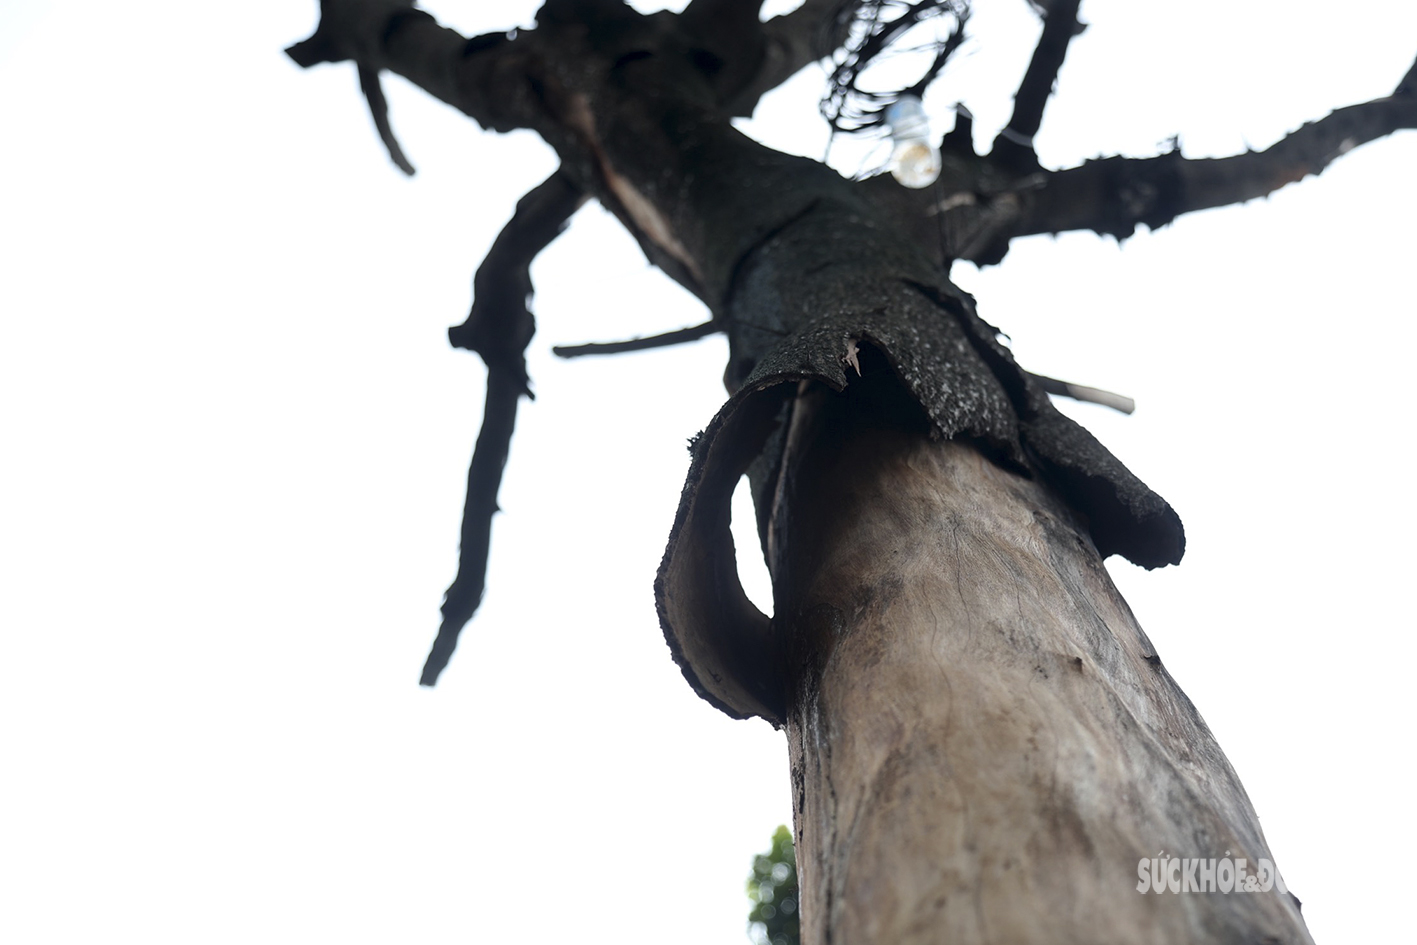 Nhiều cây cổ thụ ở Hà Nội chết khô, tiềm ẩn đổ gãy trong mùa mưa bão - Ảnh 4.